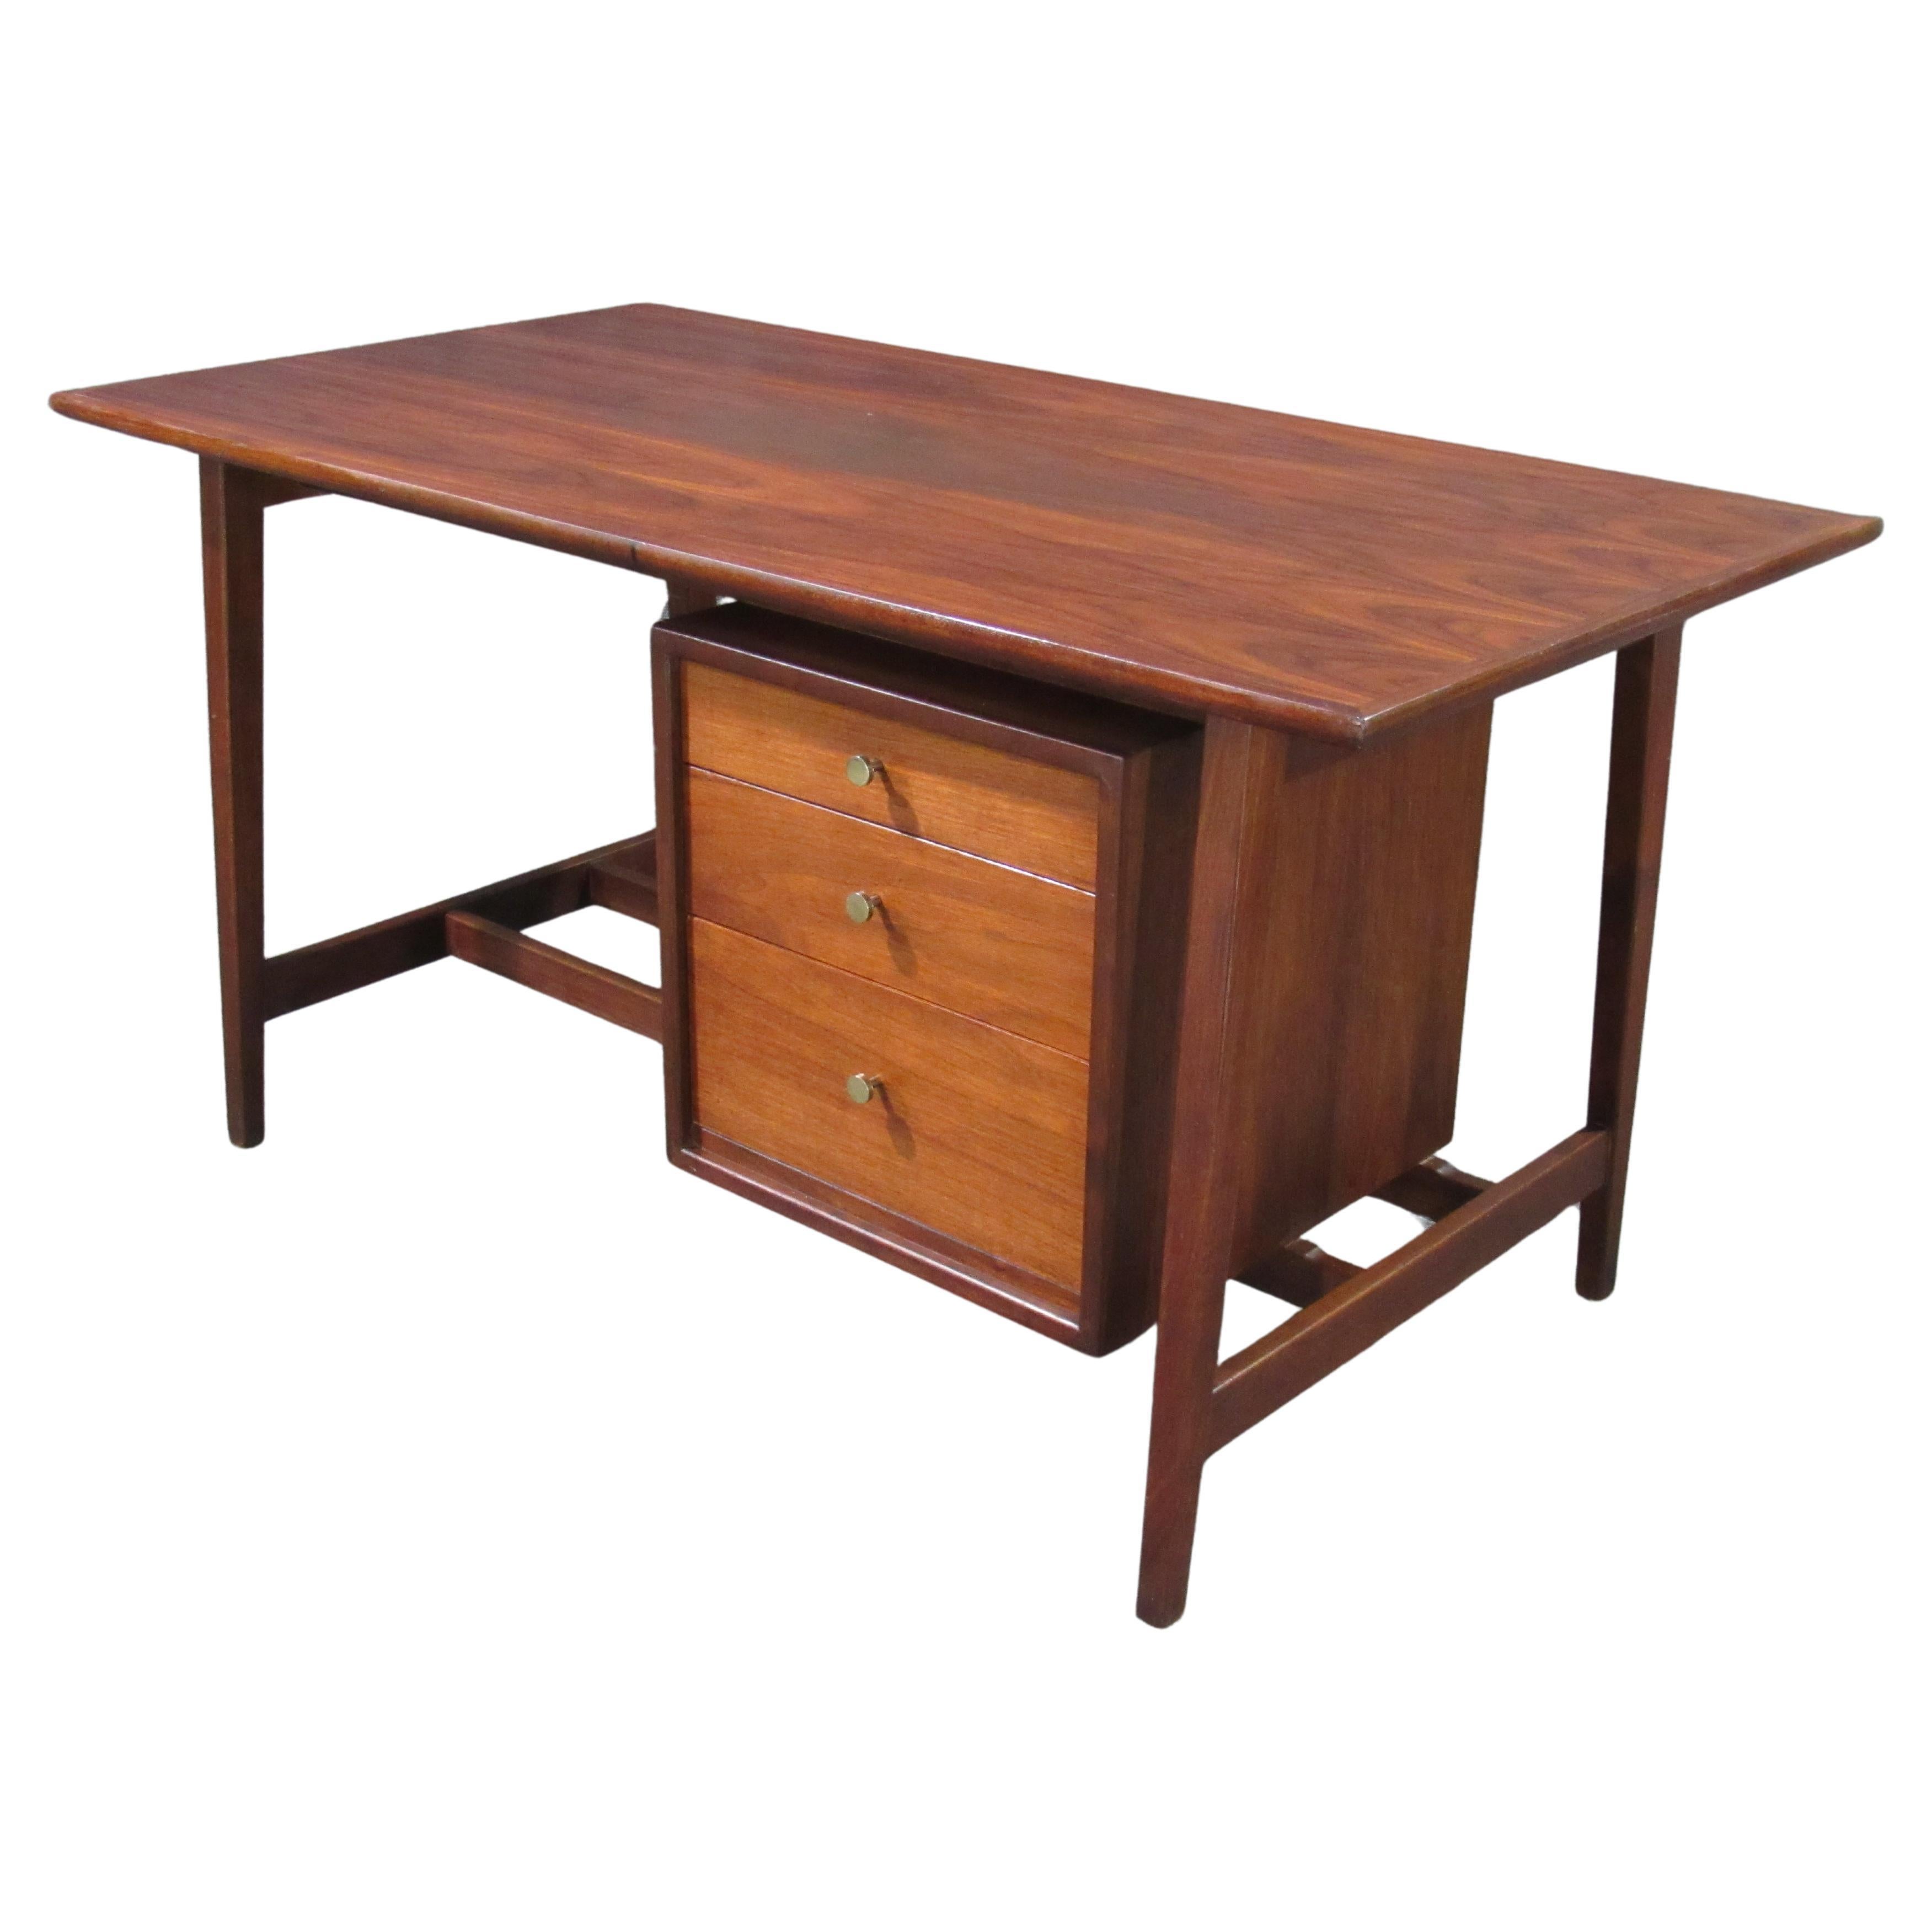 Moderner Mid-Century-Schreibtisch aus Nussbaumholz mit runden Griffen